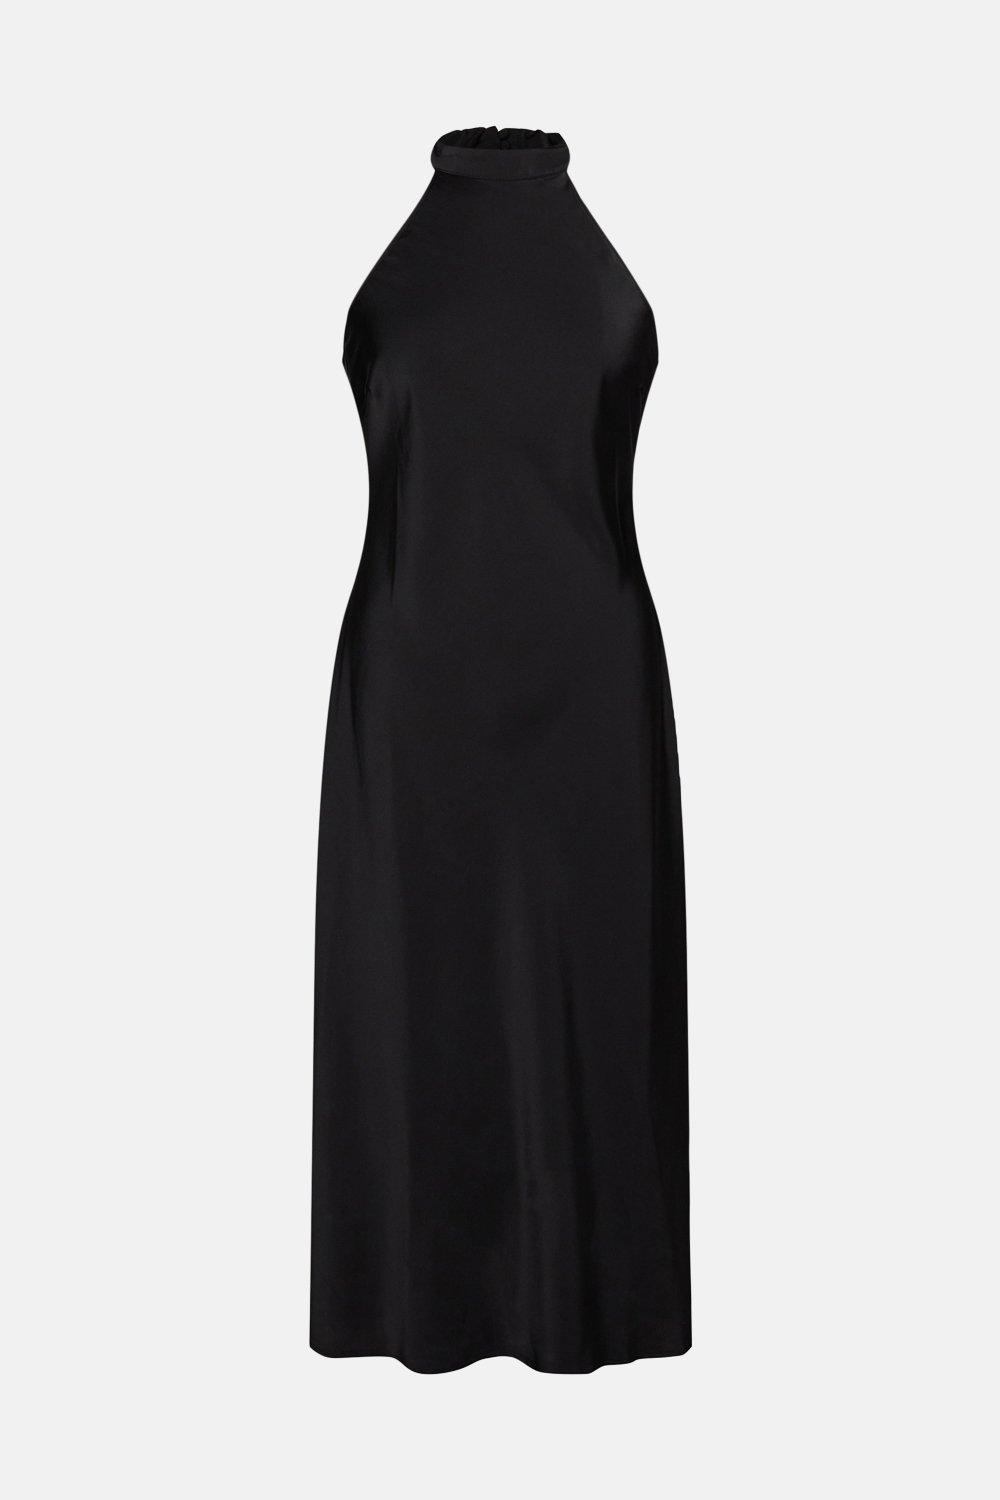 satynowa czarna sukienka odkryte ramiona